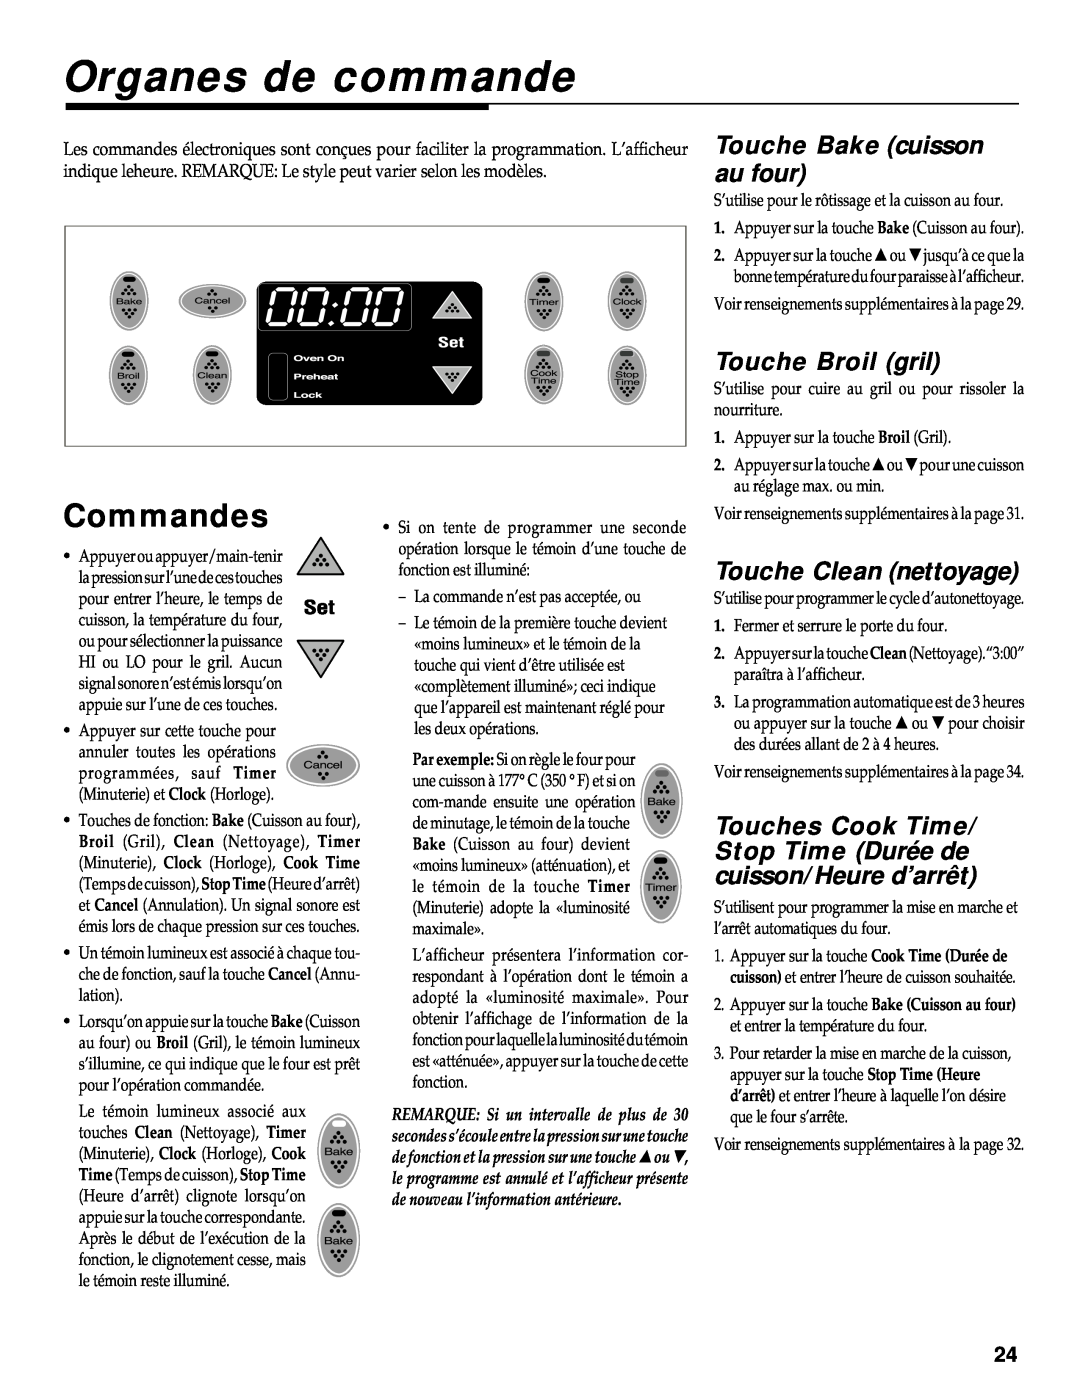 Maytag RS-1 manual Organes de commande, Commandes, Touche Bake cuisson au four, Touche Broil gril, Touche Clean nettoyage 